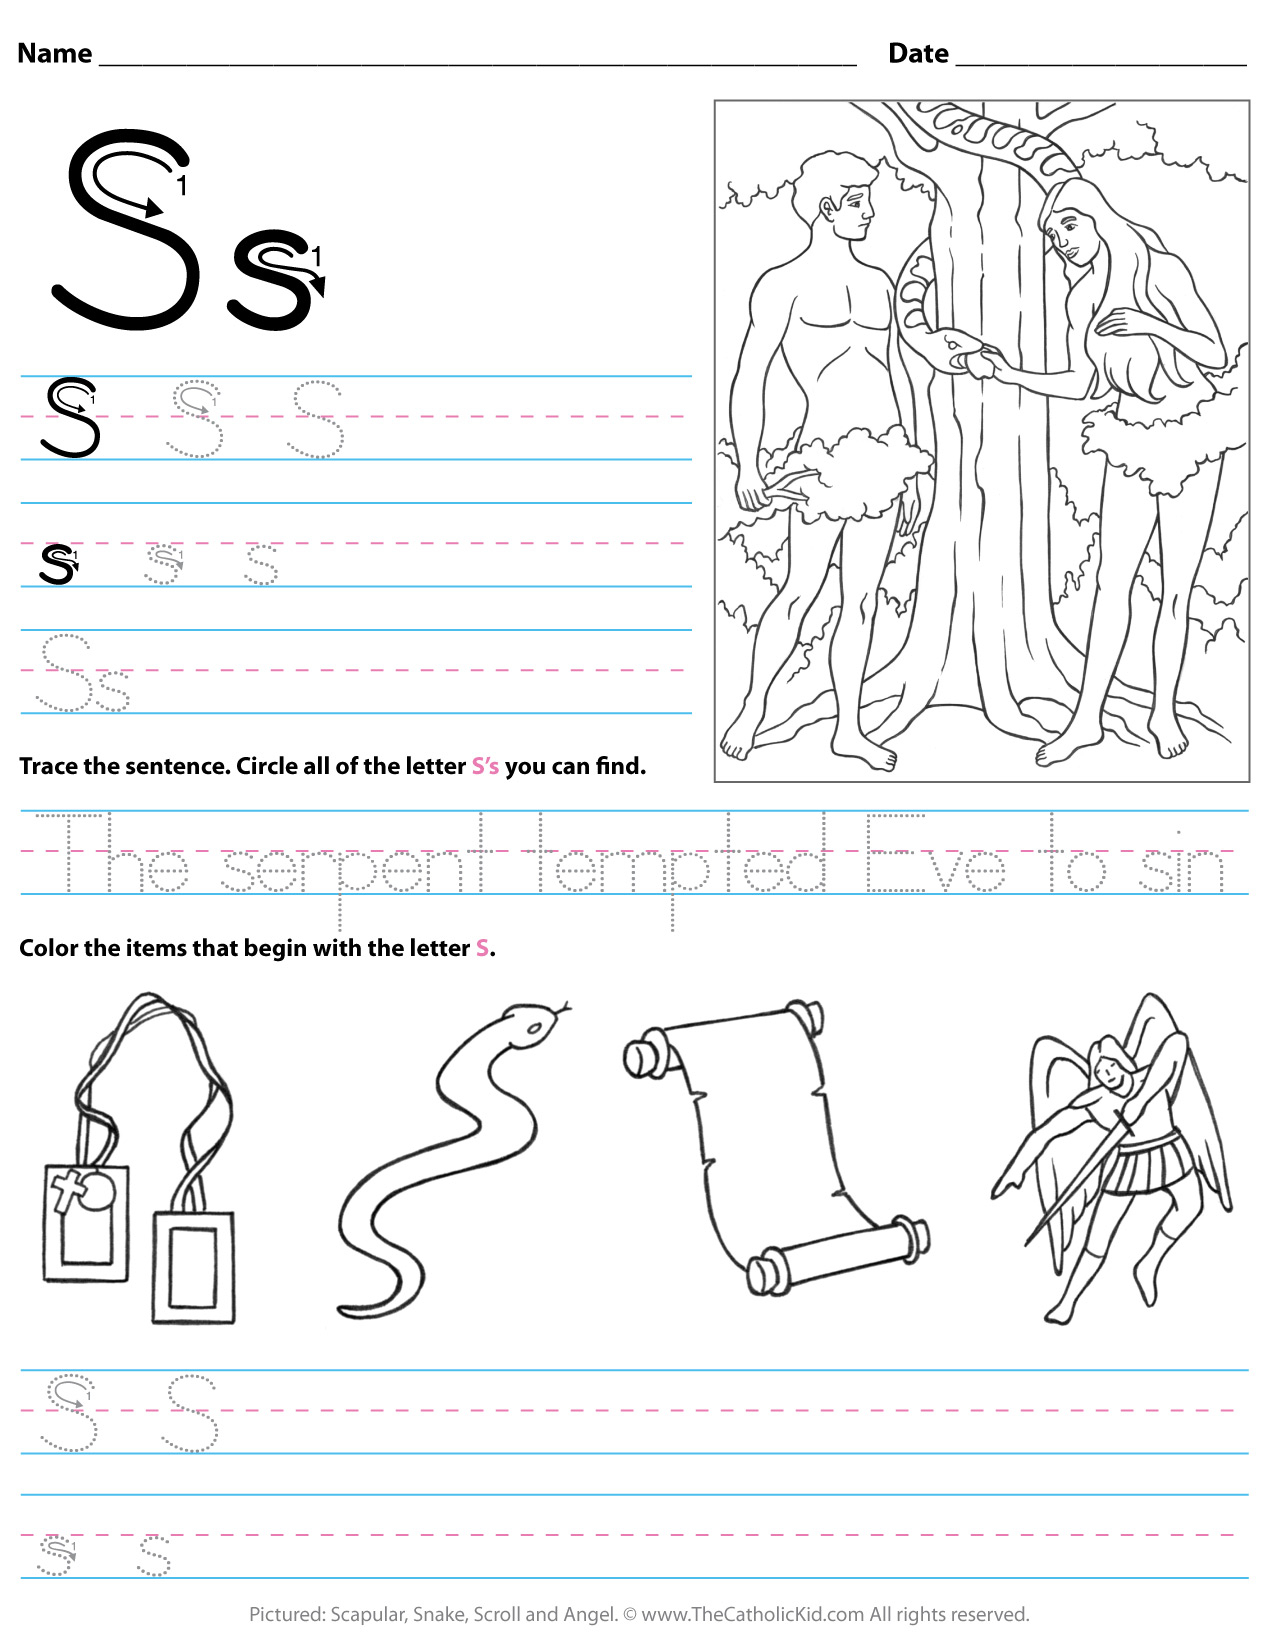 Catholic Alphabet Letter S Worksheet Preschool Kindergarten pertaining to Letter S Worksheets For Kindergarten